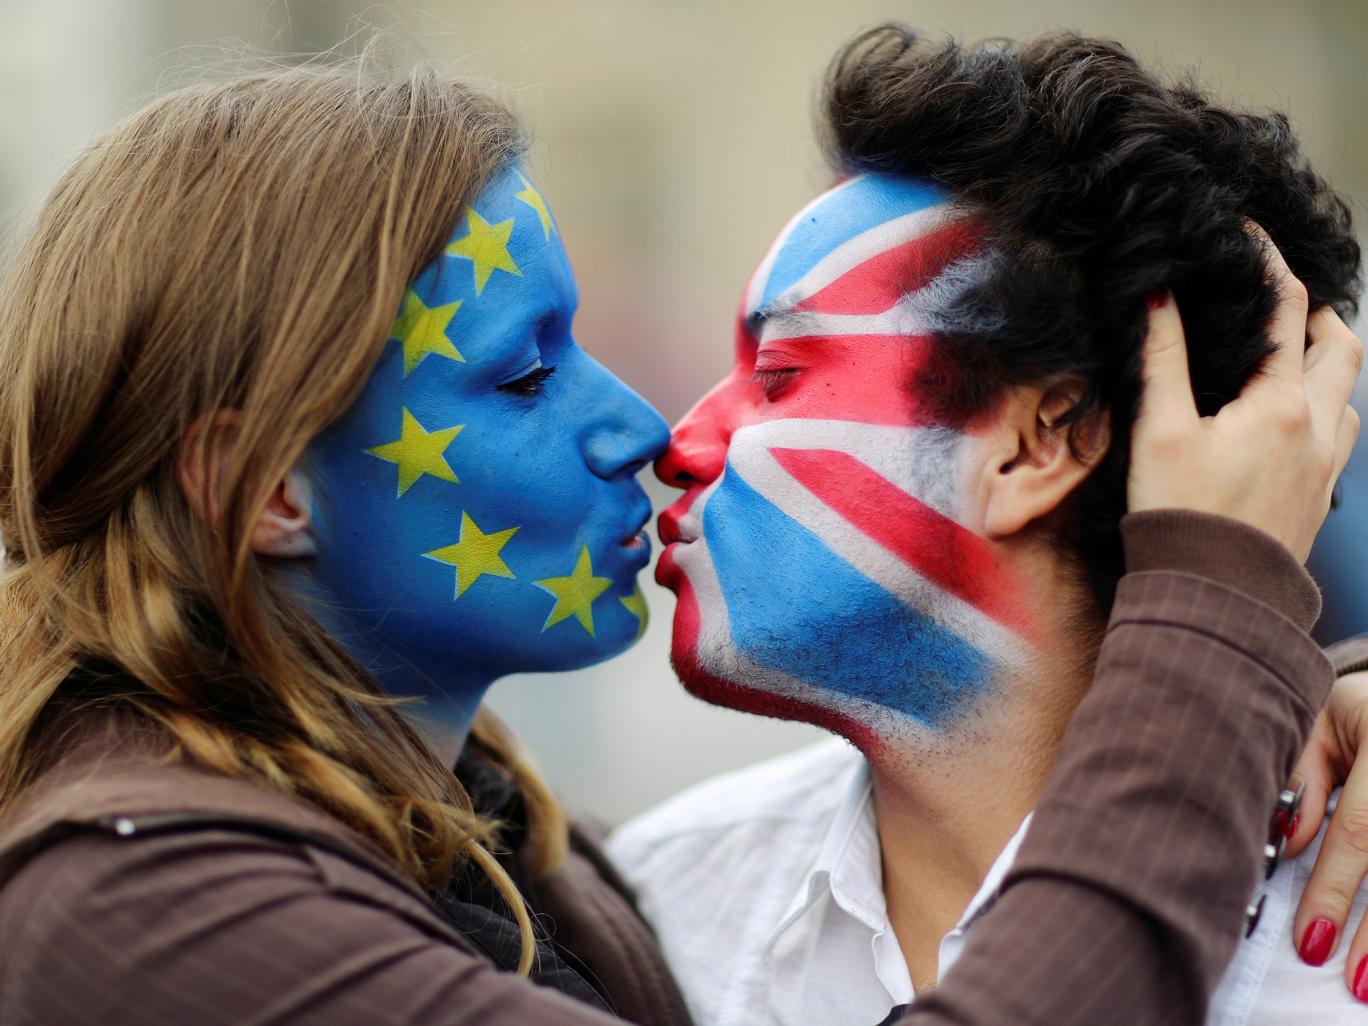 Bekeményít az EU: nem tárgyalnak a britekkel, amíg nincs elintézve a tartózkodási engedély kédése 1